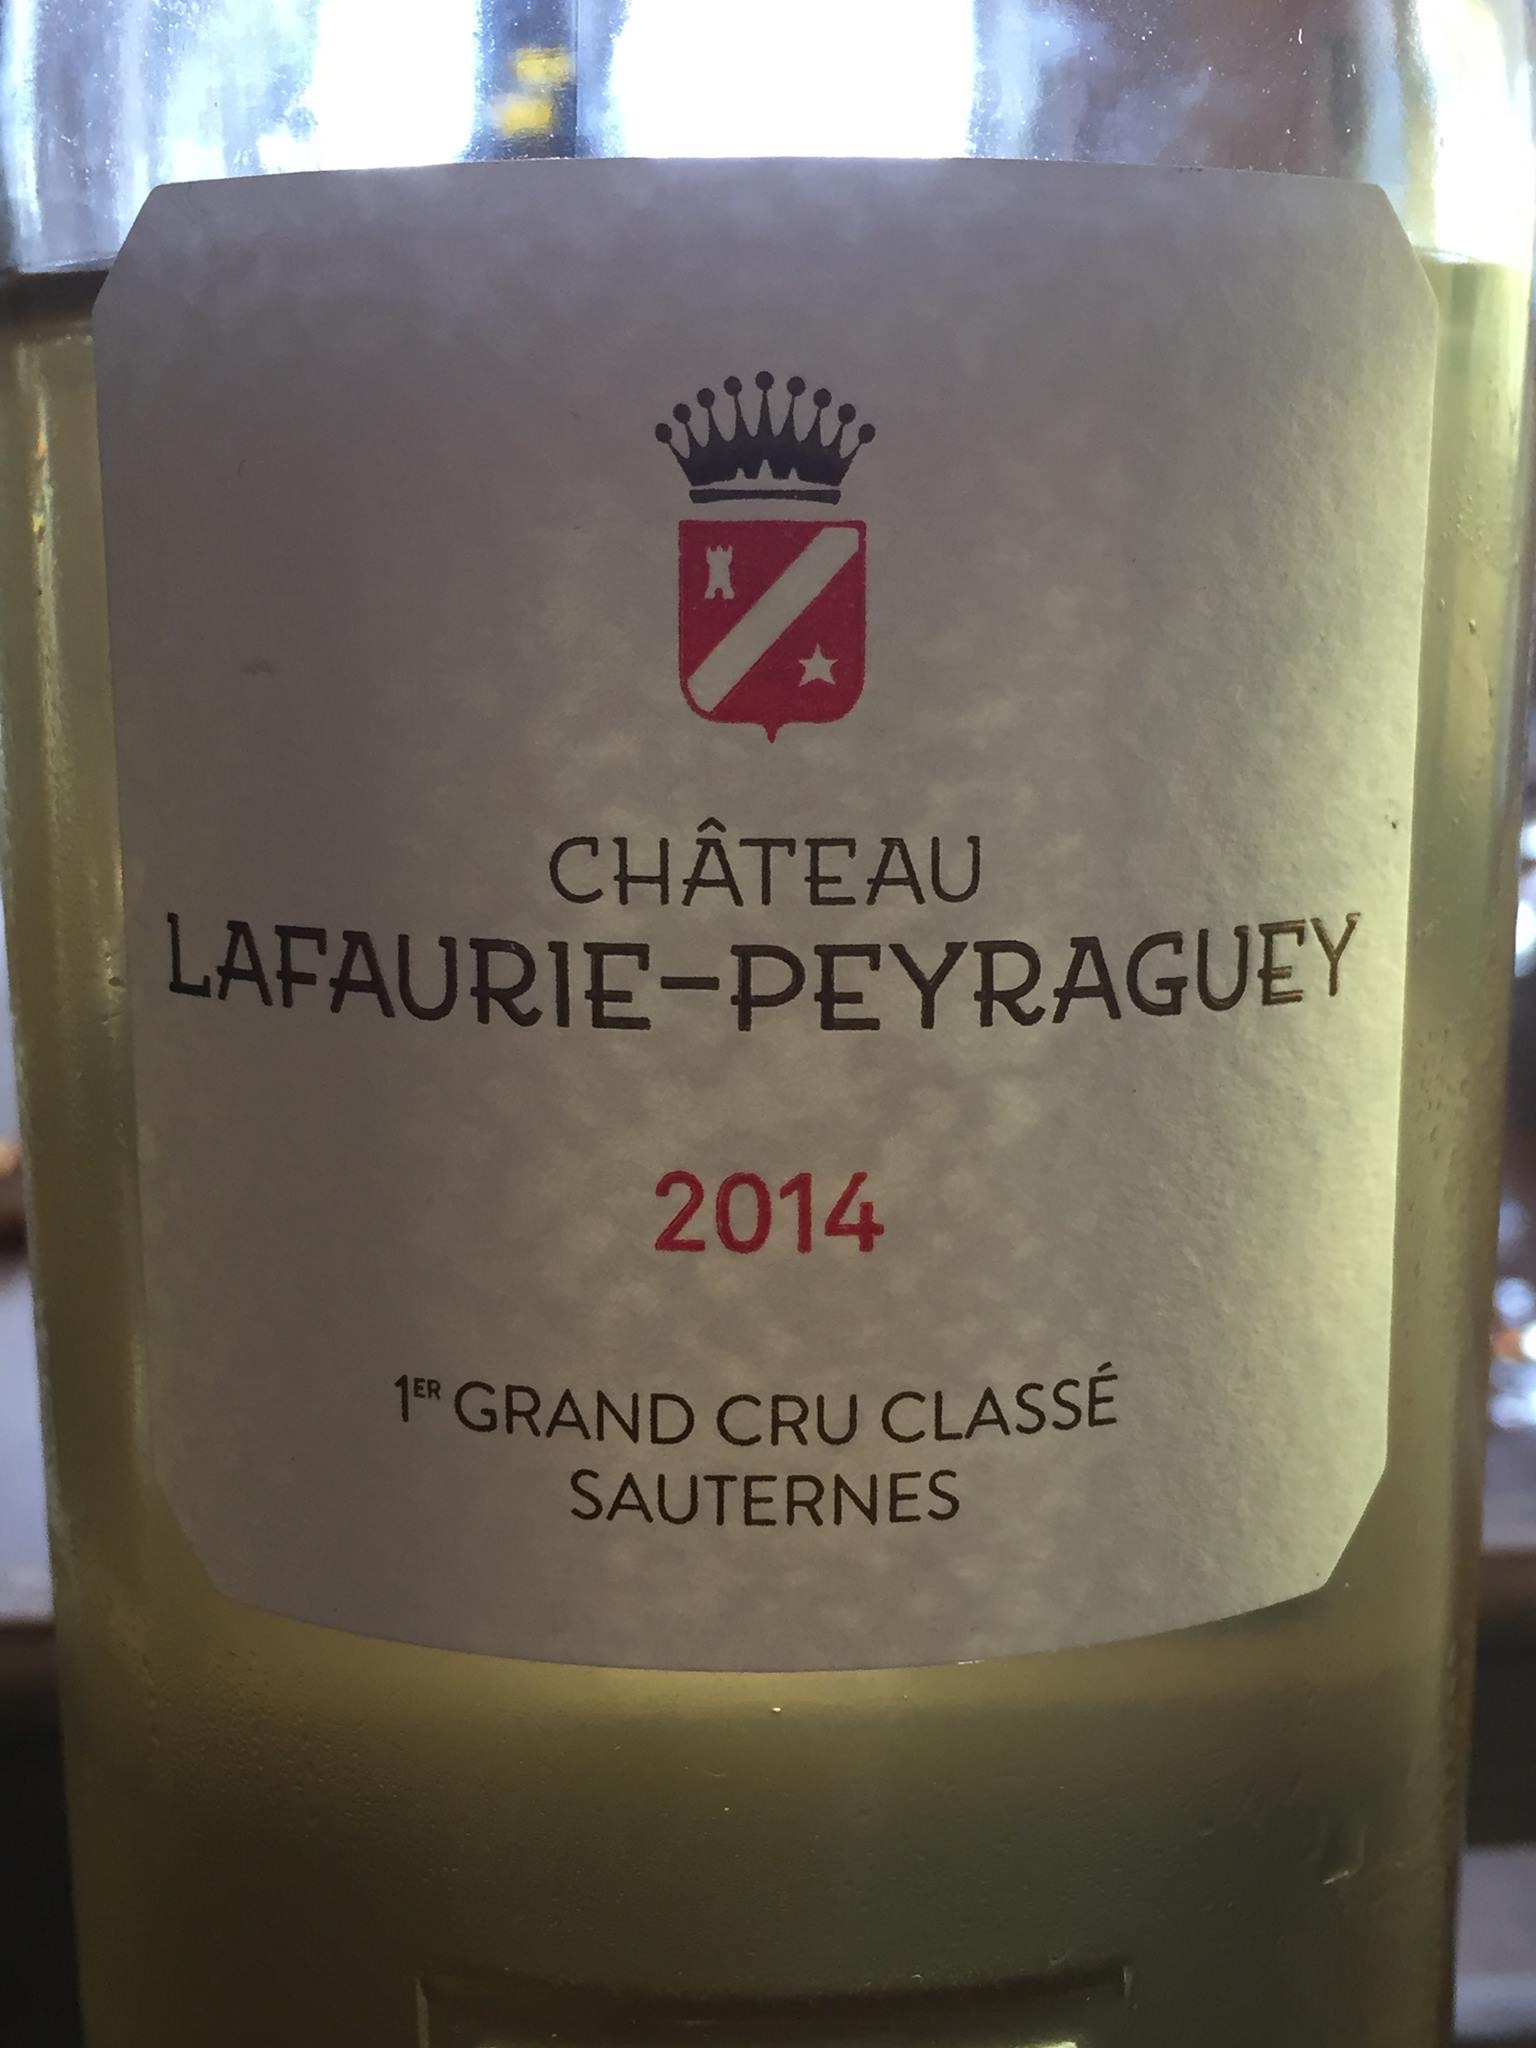 Château Lafaurie-Peyraguey 2014 – Sauternes, 1er Grand Cru Classé